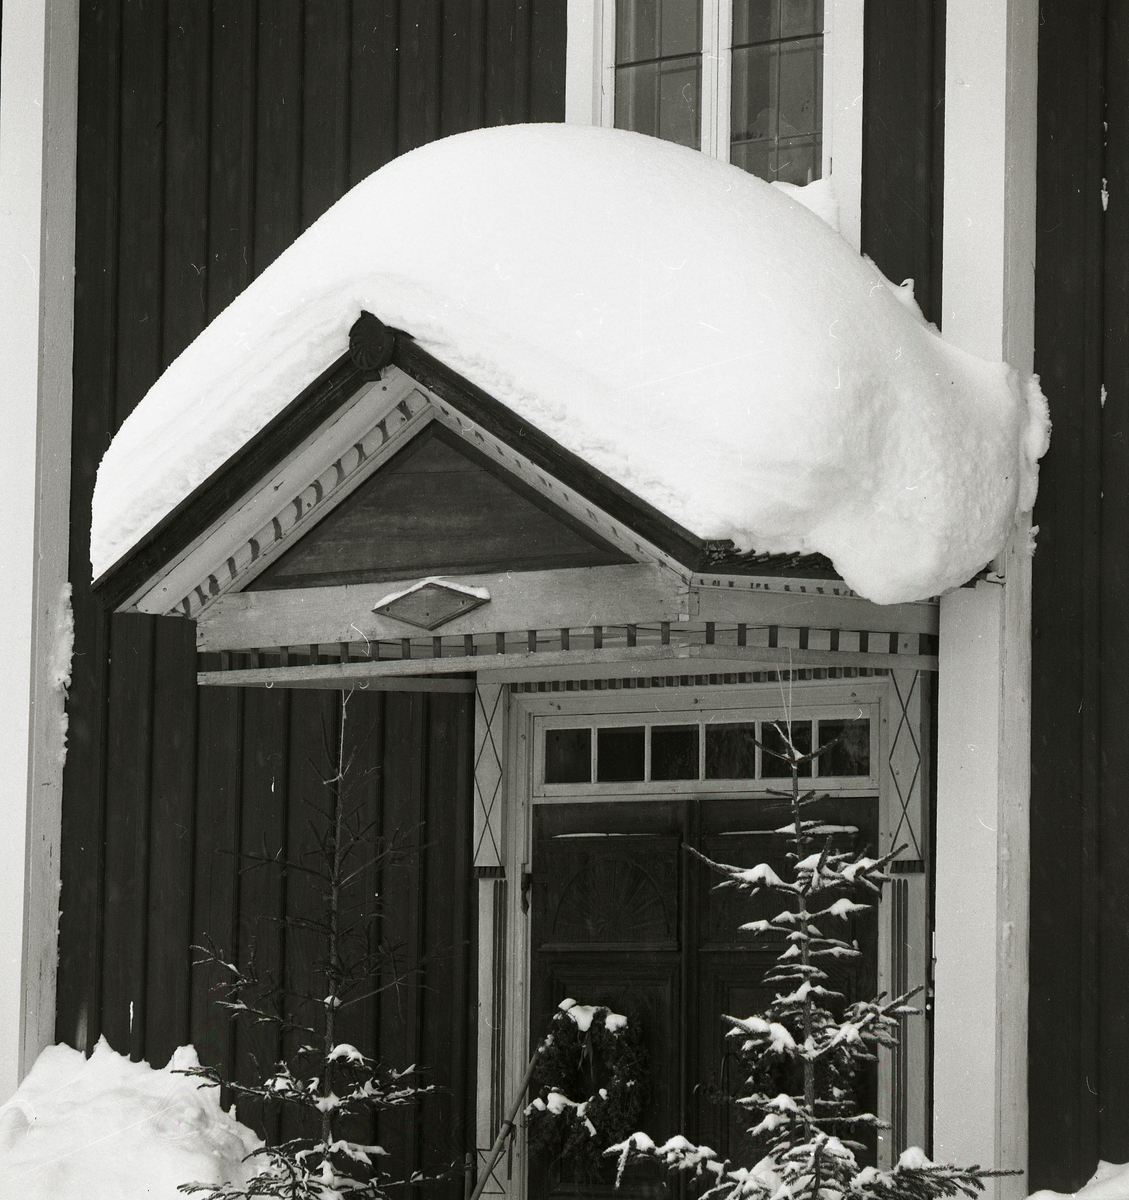 Tung ligger snön på farstukvistens tak och når ändå upp till fönstrets undre kant. På pardörrarna under farstukvisten hänger grankransar och berättar att julen är i antågande. 
Två granar ramar in dörren på sidorna och överljusfönstret markerar dörrens avgränsning upptill.